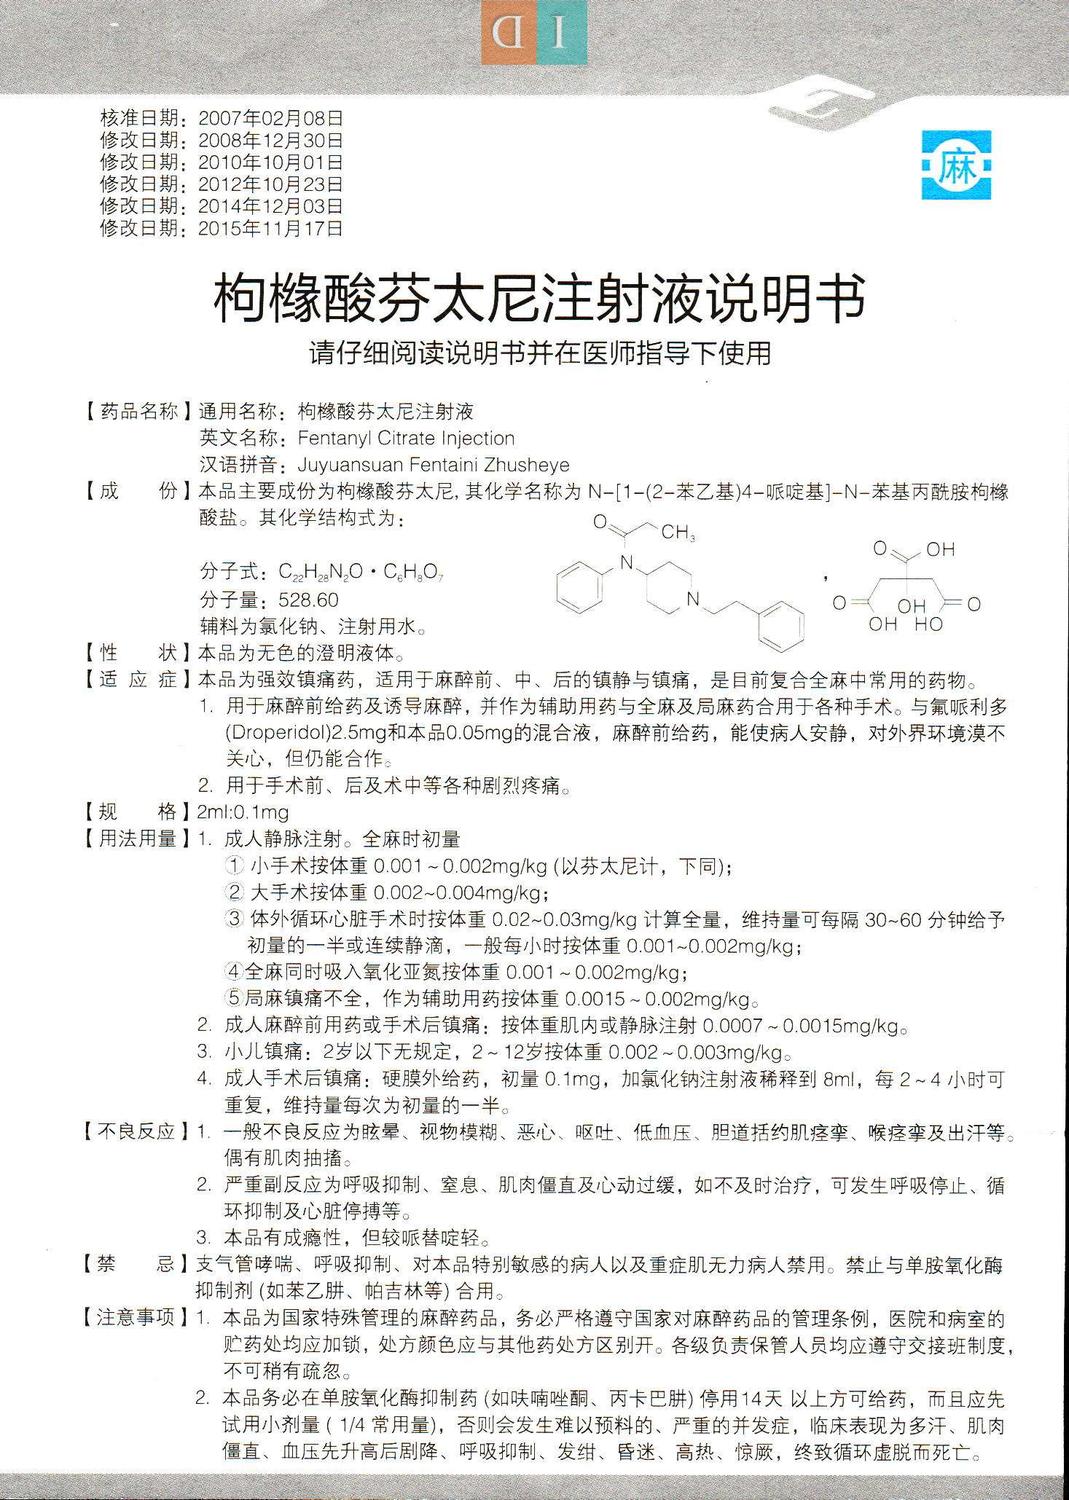 麻枸橼酸芬太尼注射液说明书2ml01mg